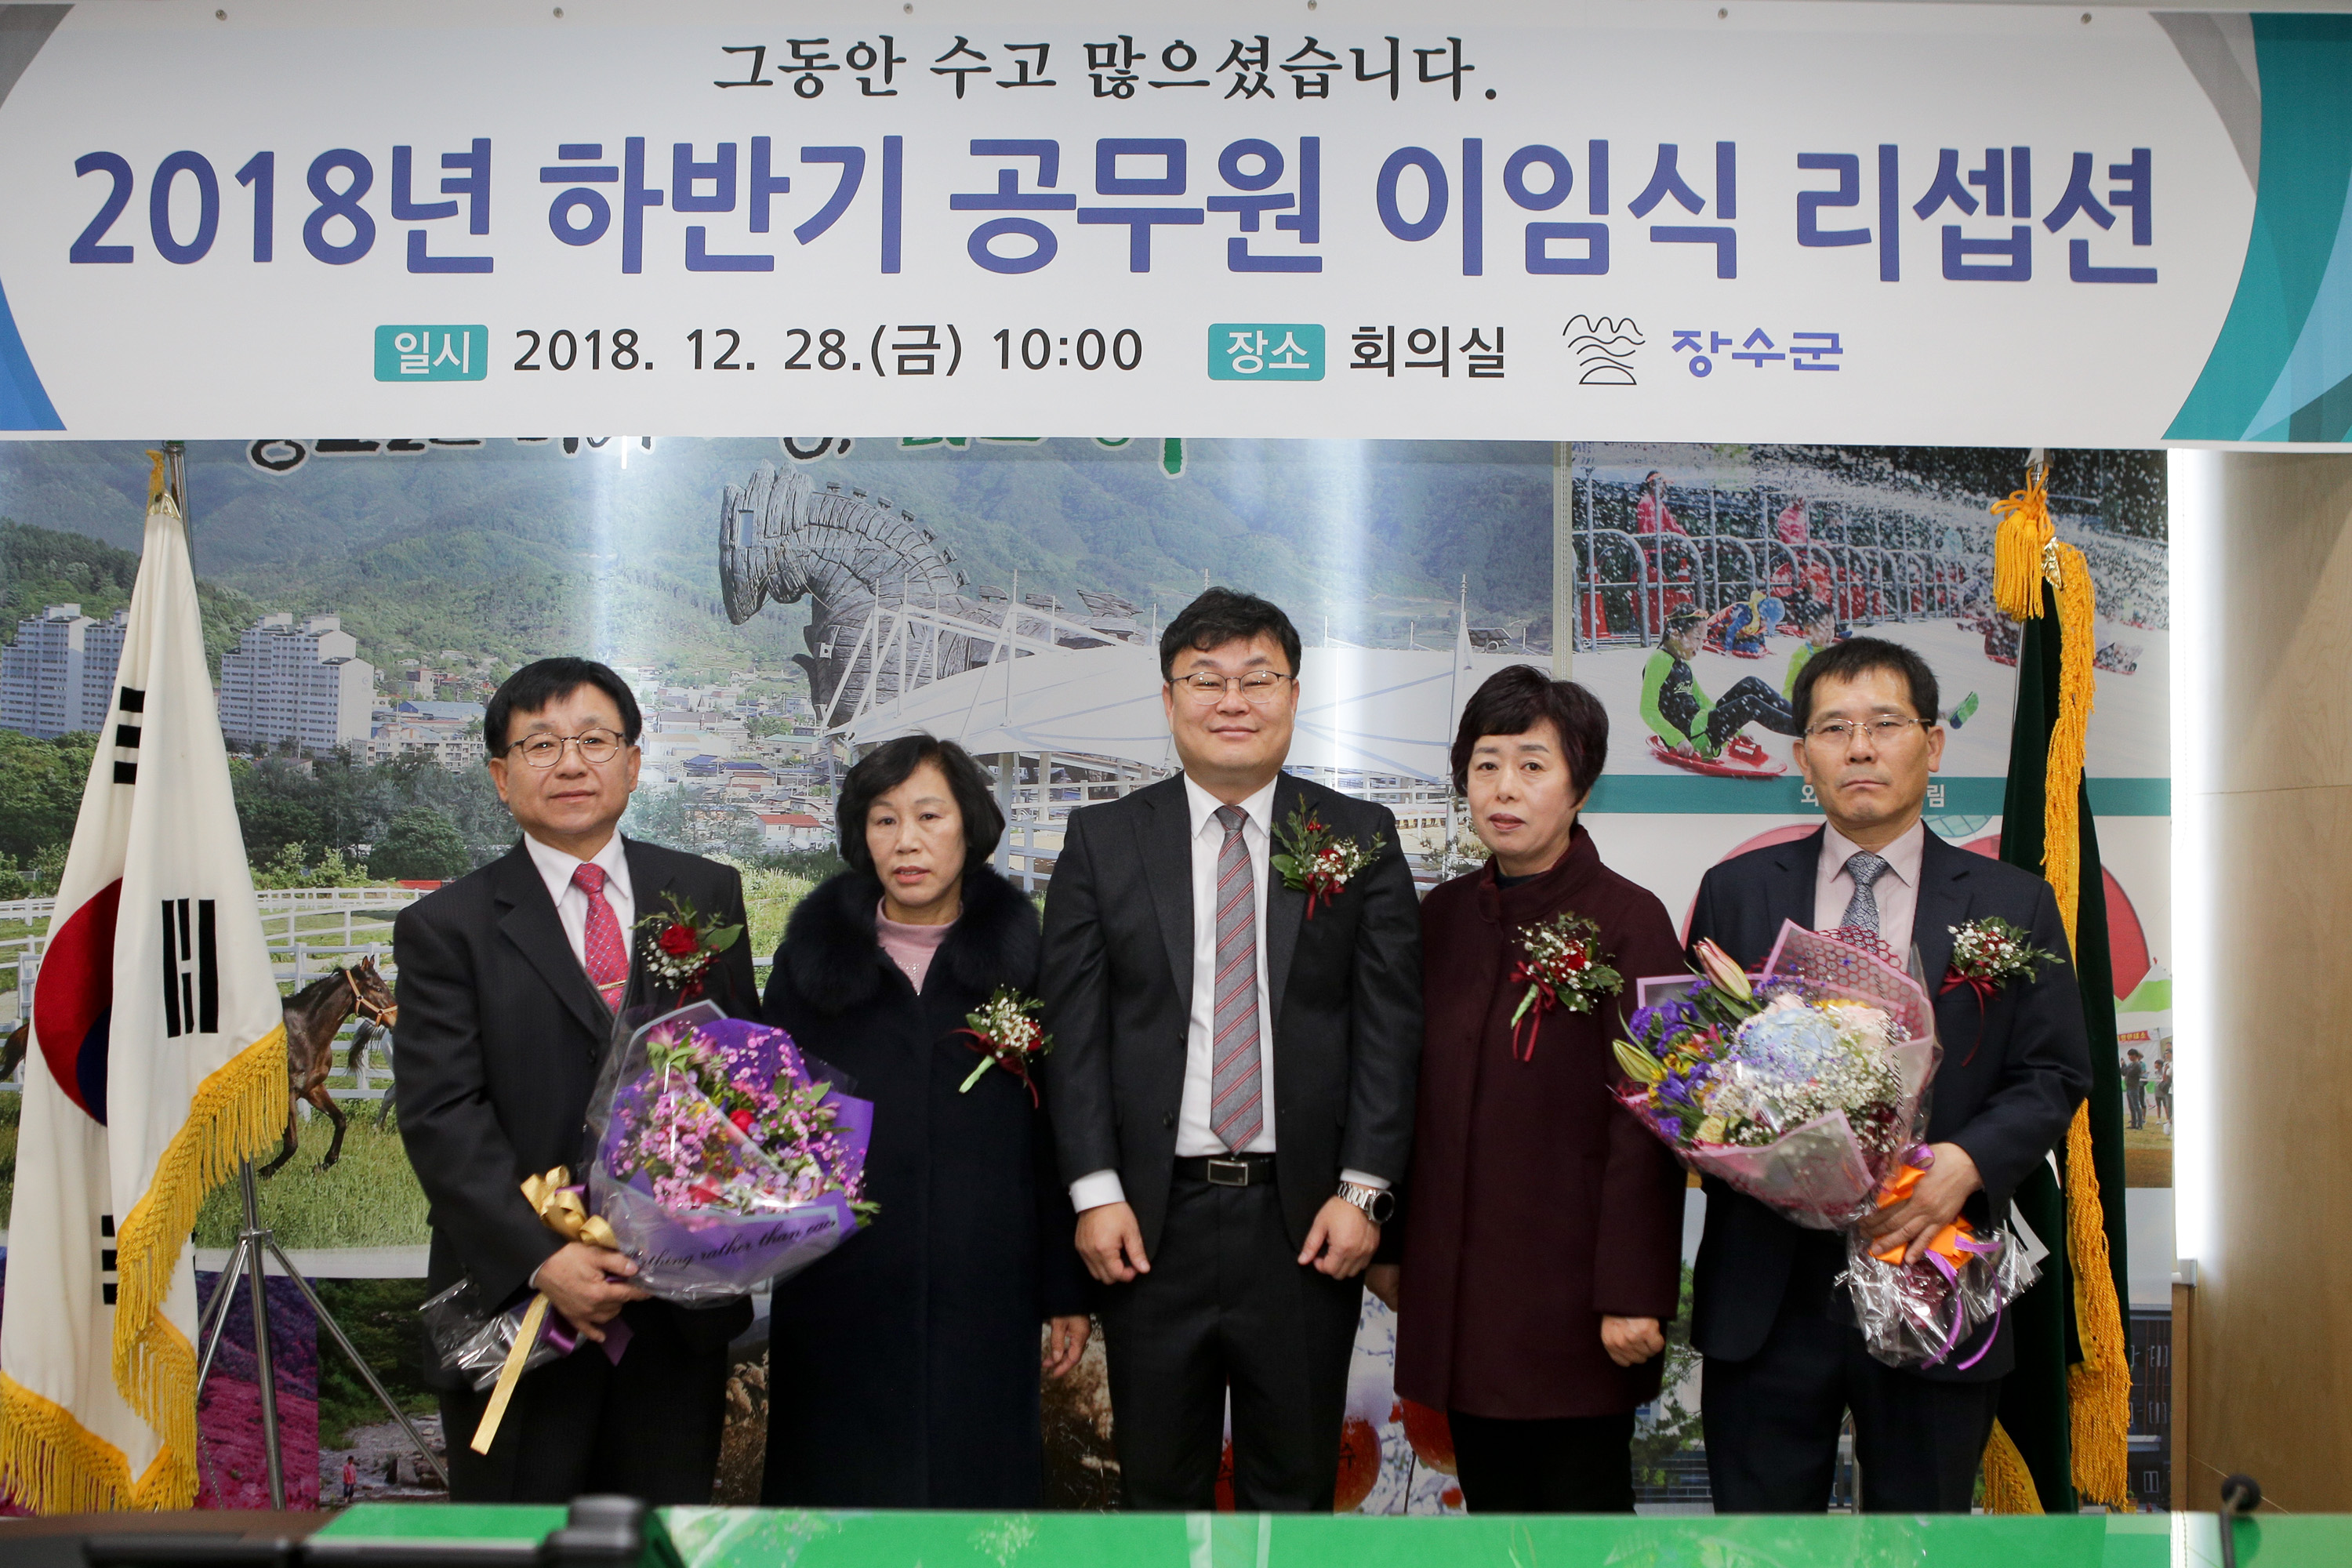 2018 하반기 공무원 이임식 개최 사진(1)